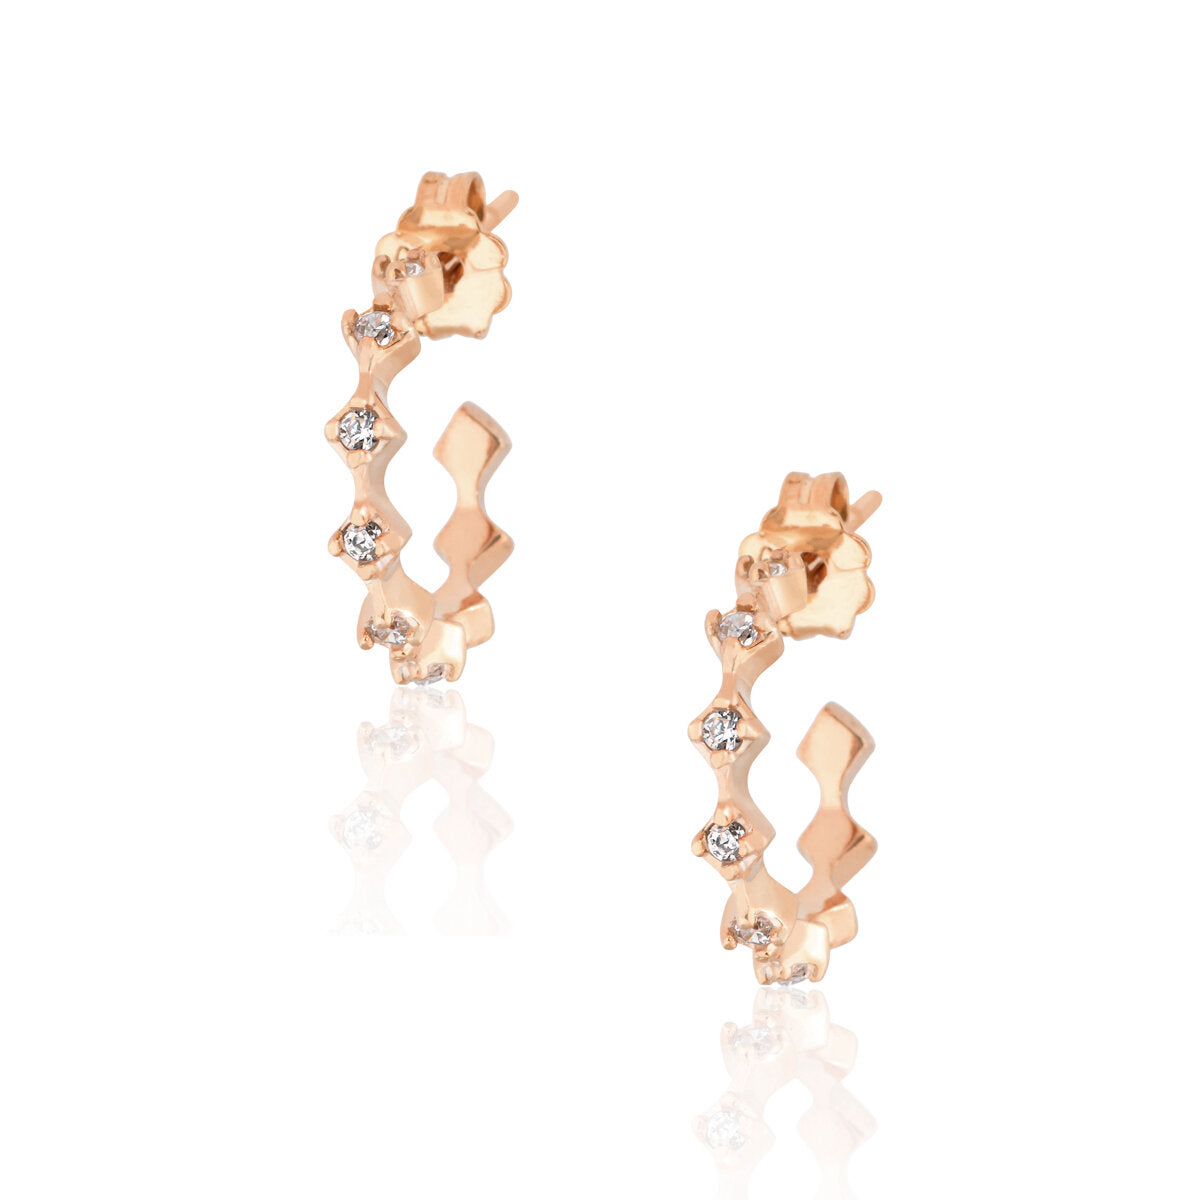 Rhombus Hoops Pair Earrings - Pink Gold Plated